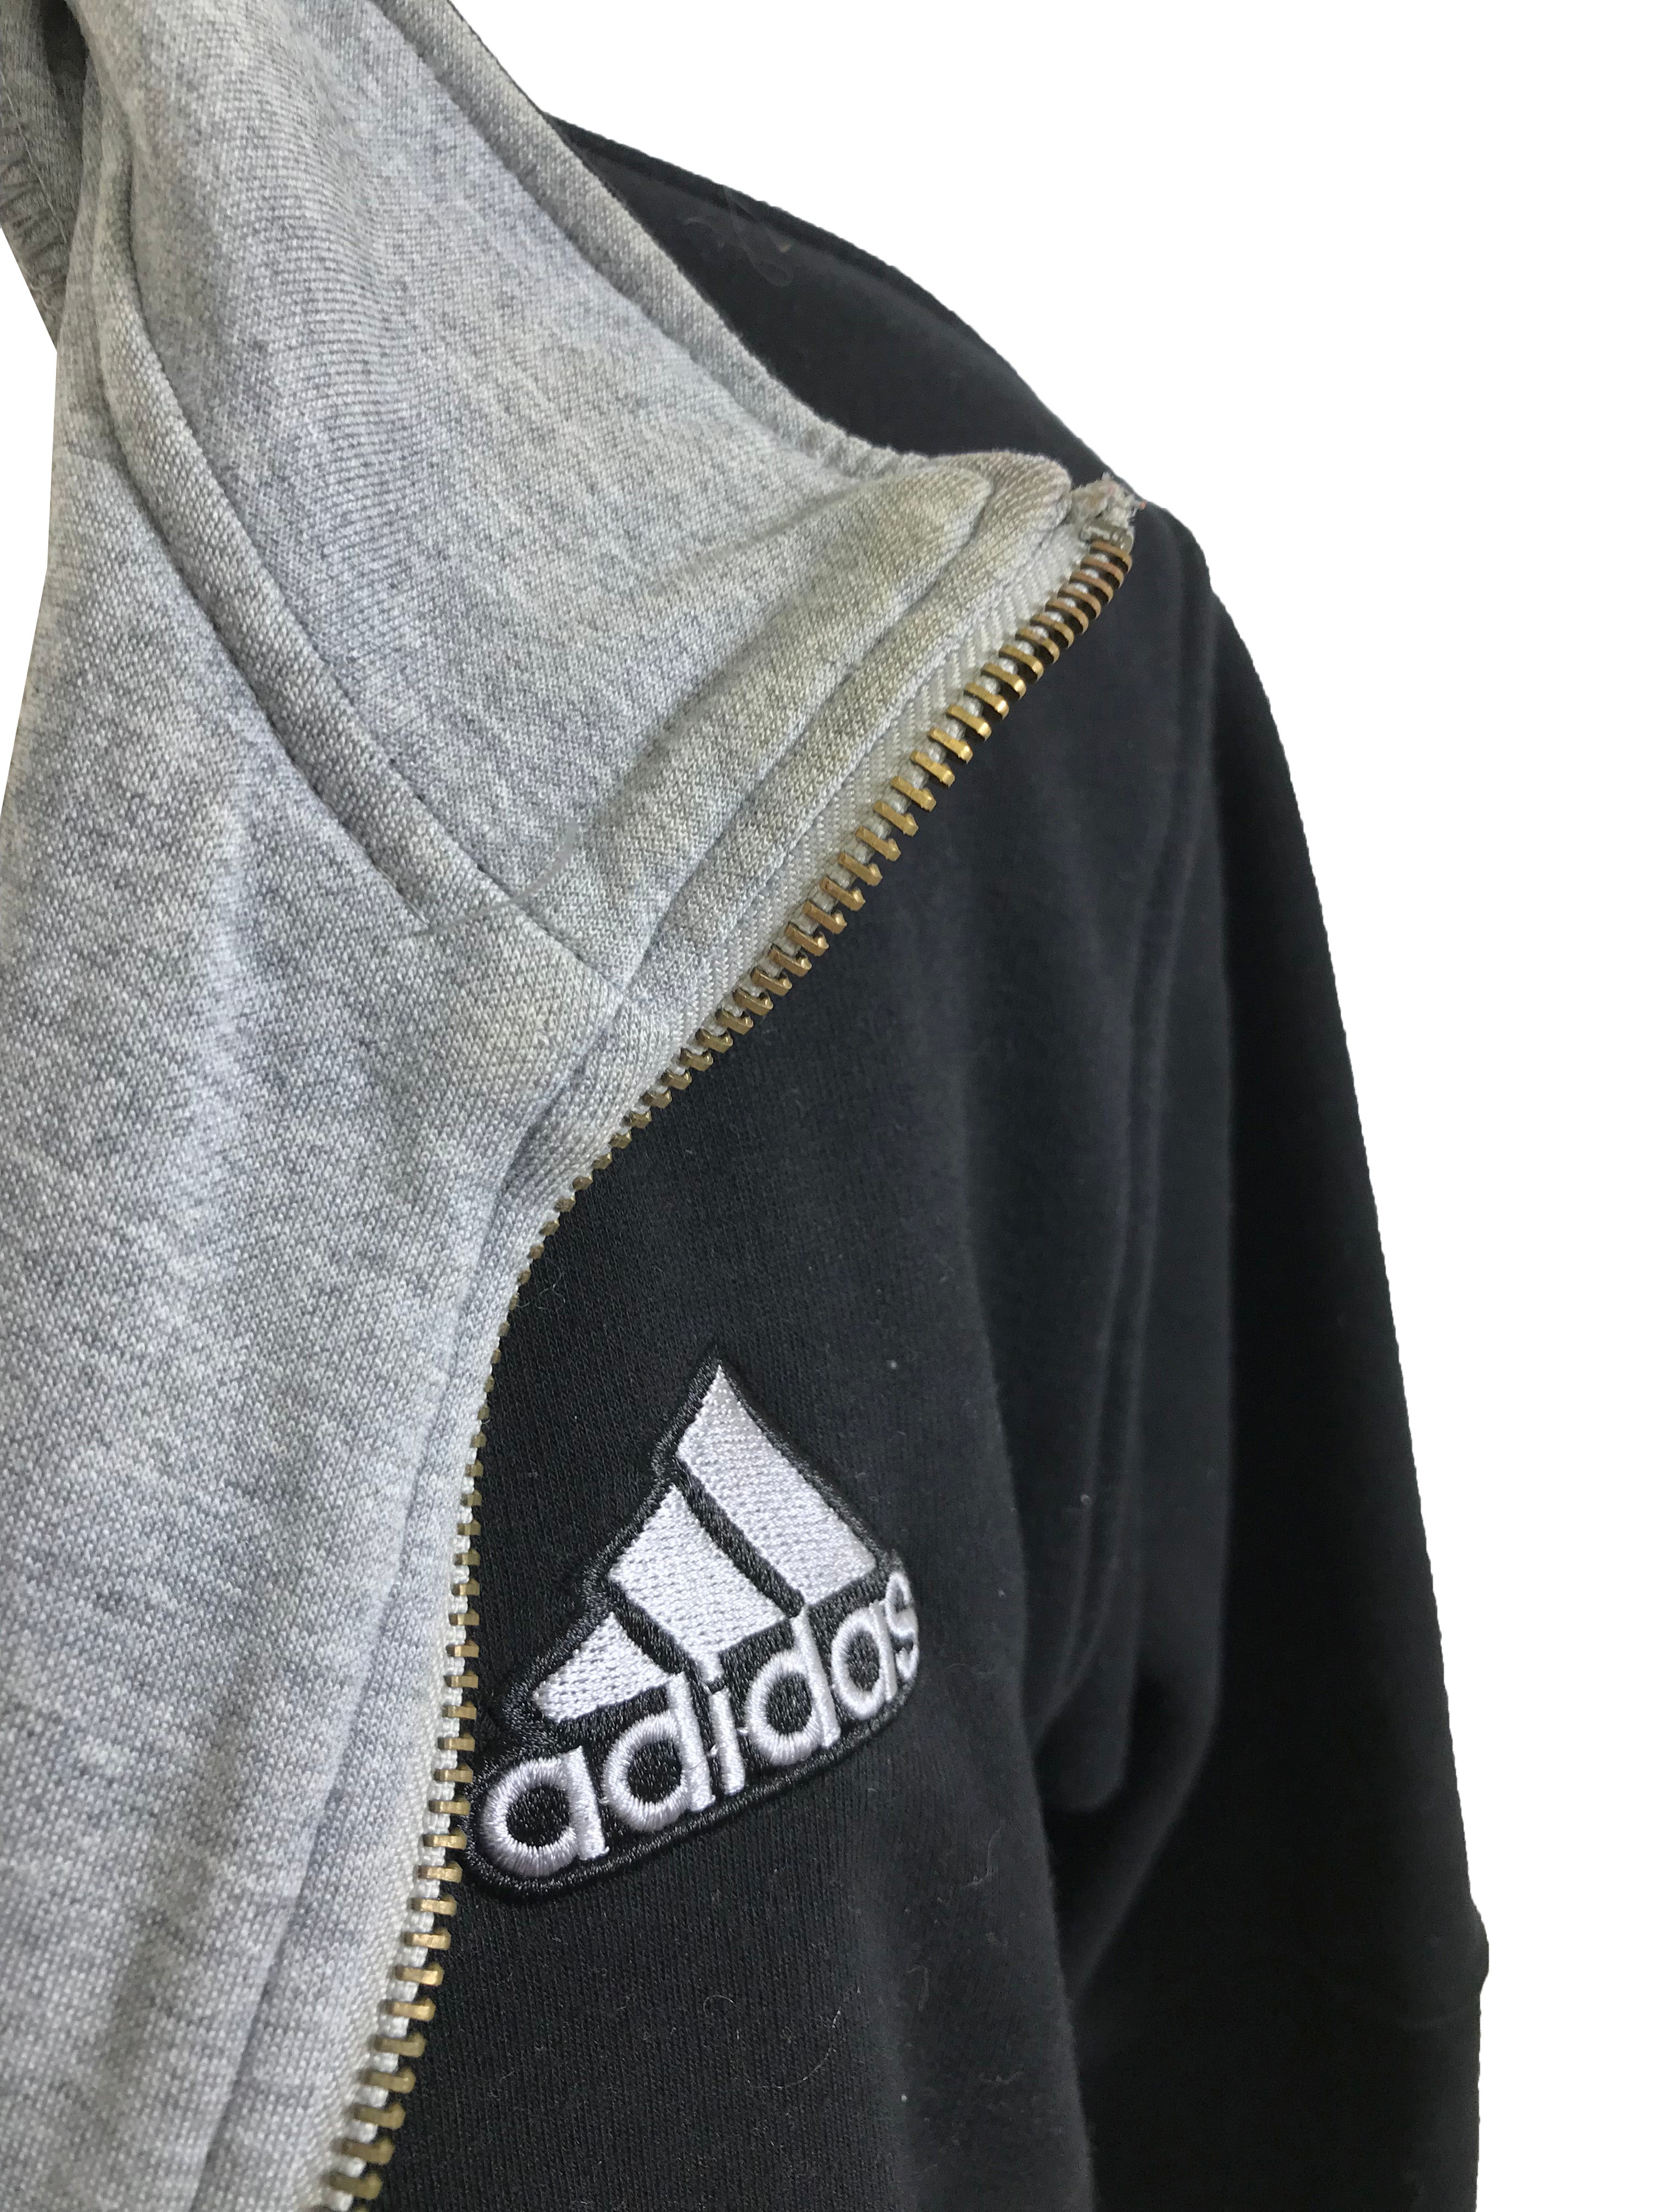 Adidas Black Zip-Up Sweatshirt Men's Size 2XL